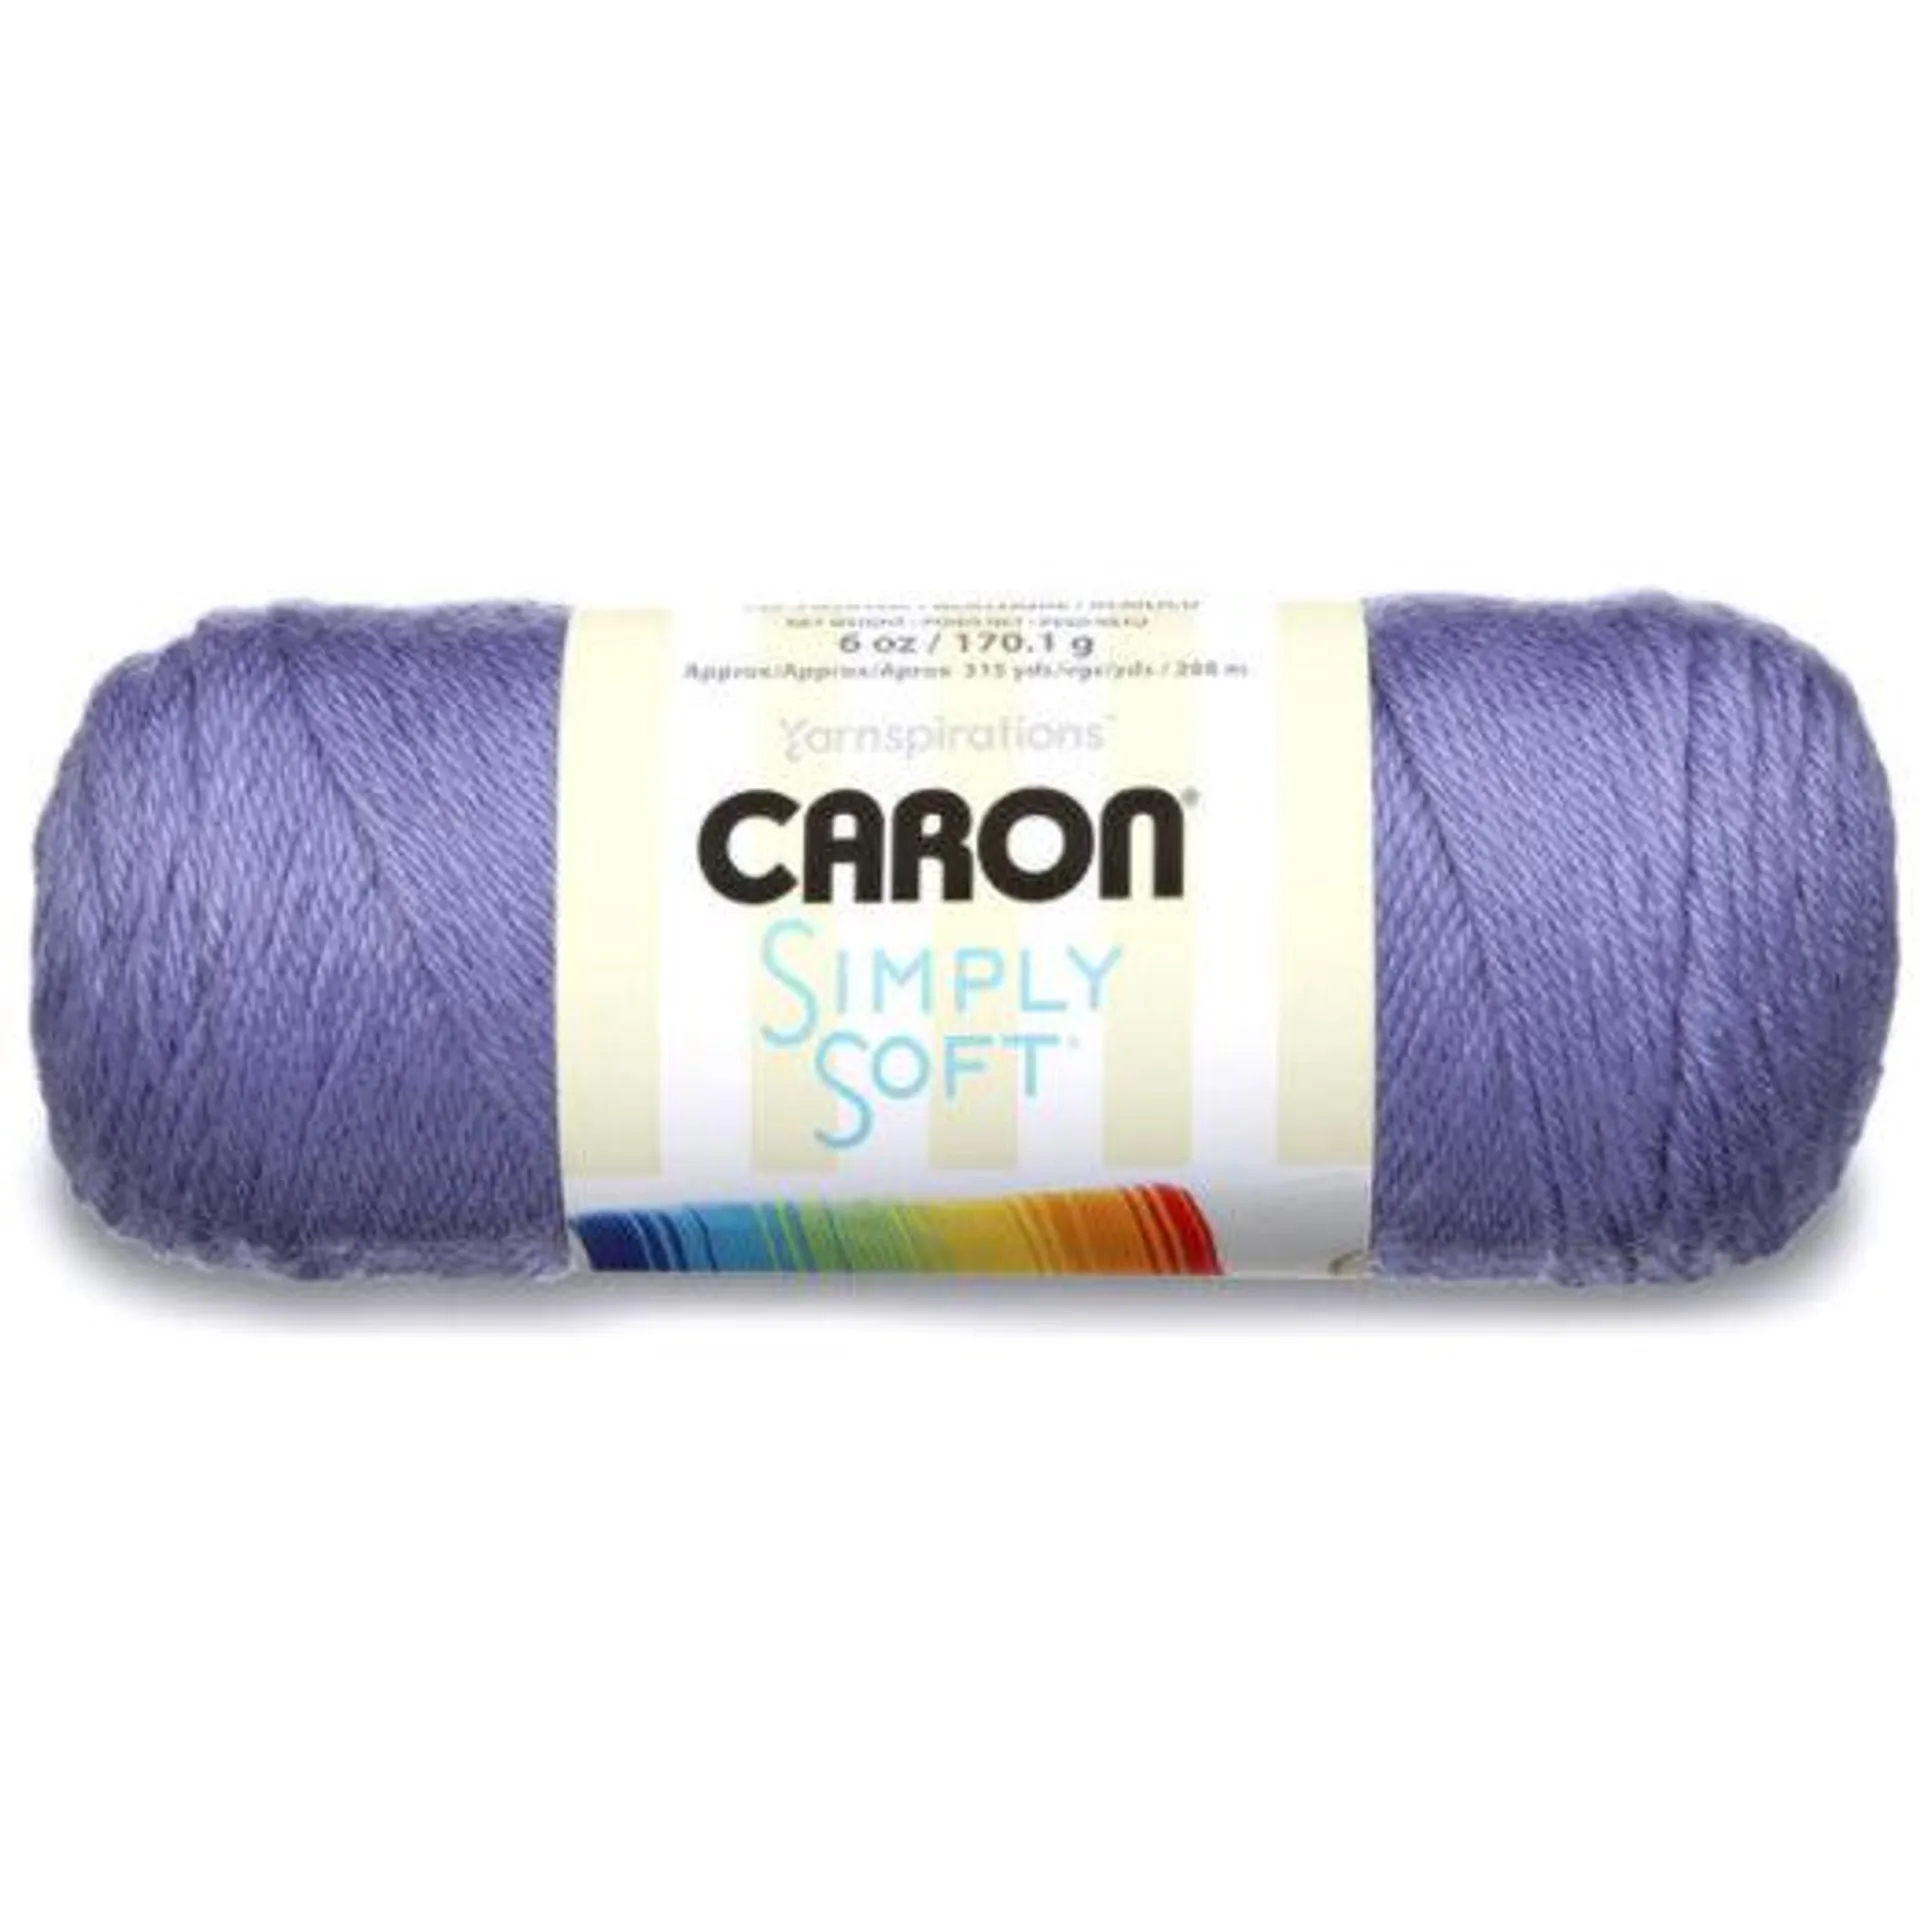 Simply Soft Solids - 170g - Caron